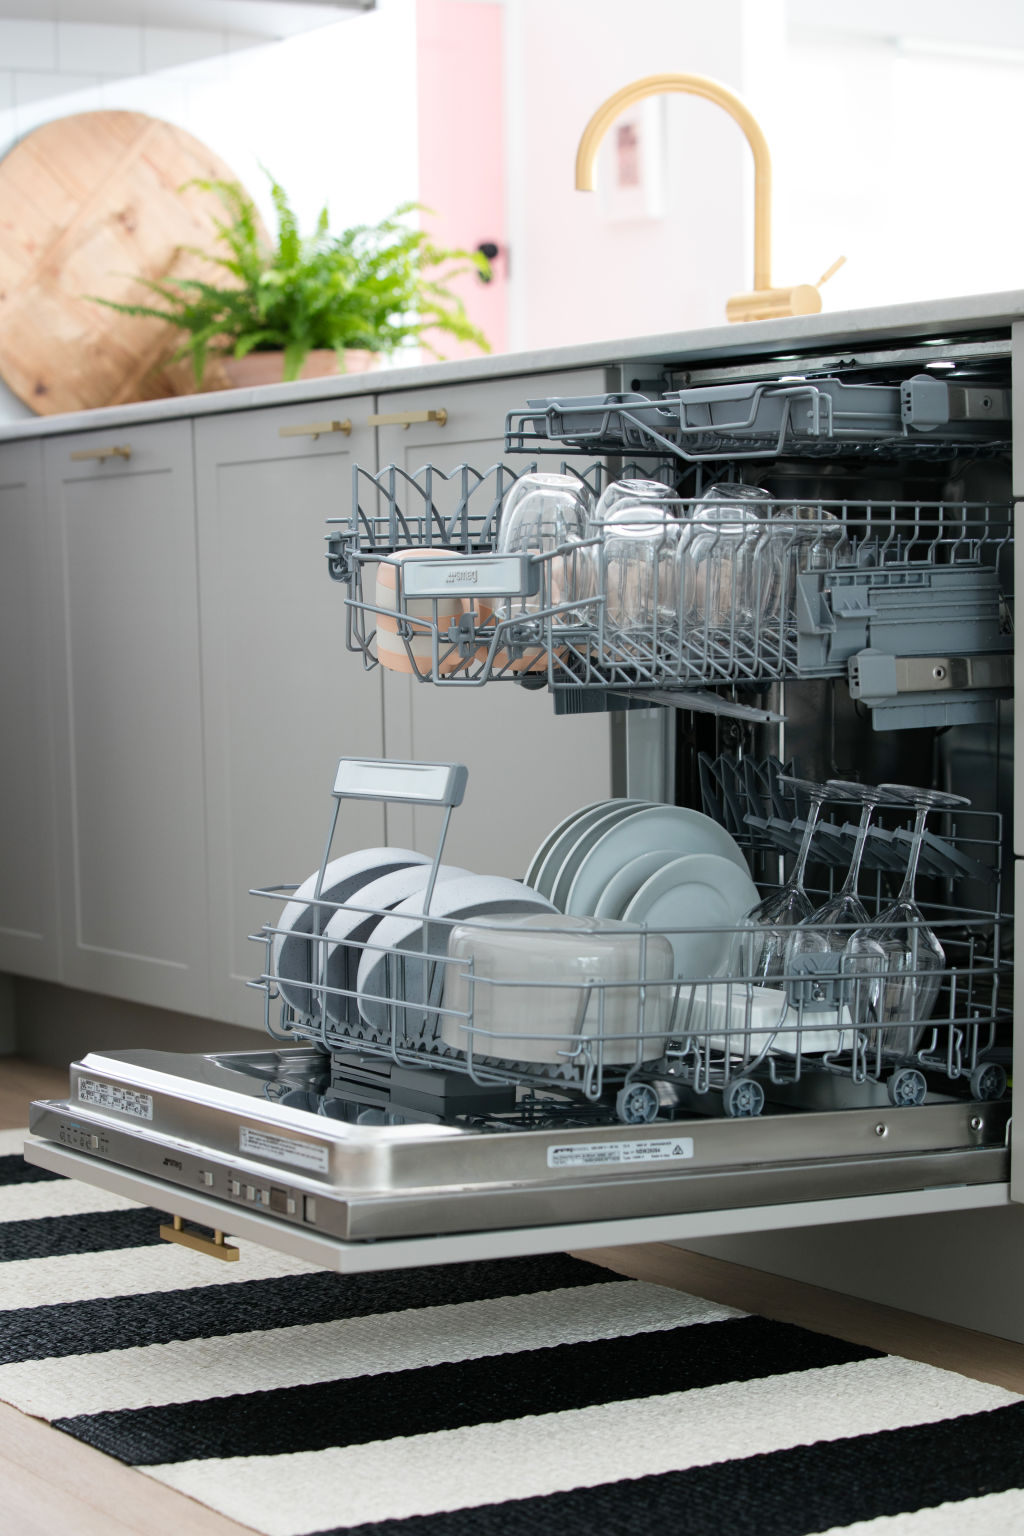 Read the instruction manual carefully before taking apart the dishwasher. Photo: Smeg